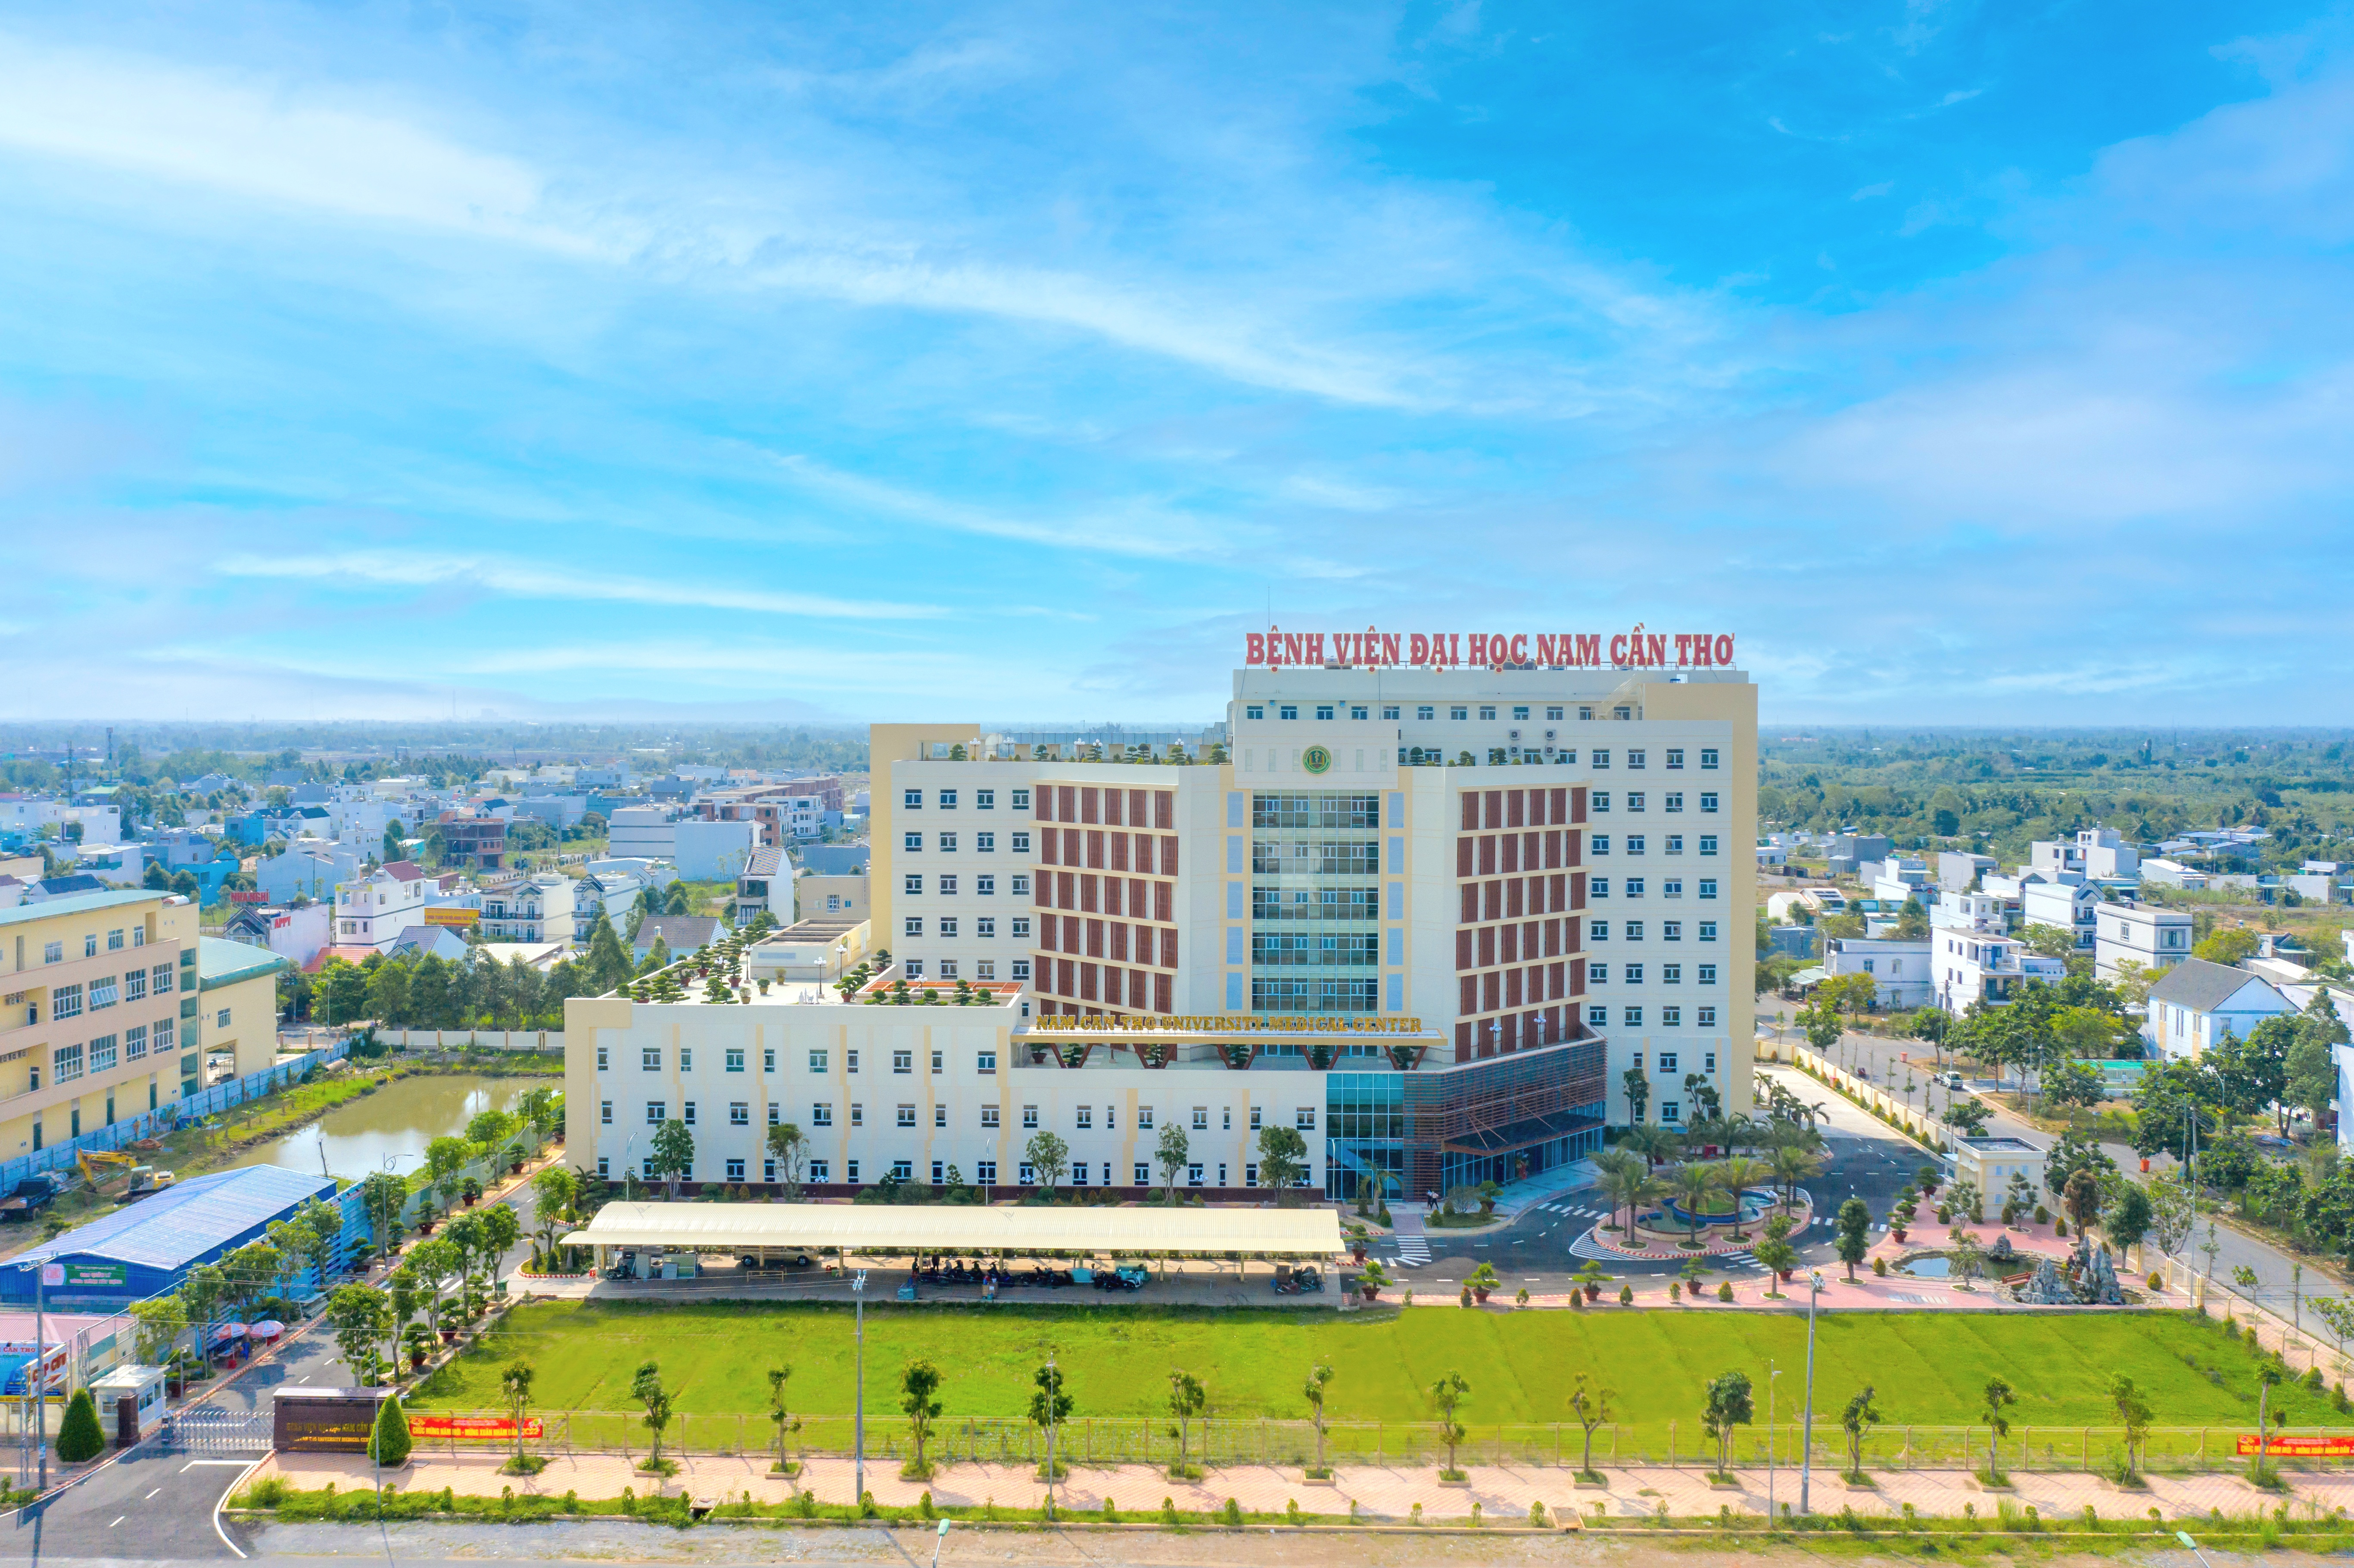 Bệnh viện Đại học Nam Cần Thơ hiện đại theo tiêu chuẩn quốc tế chính thức đi vào hoạt động.